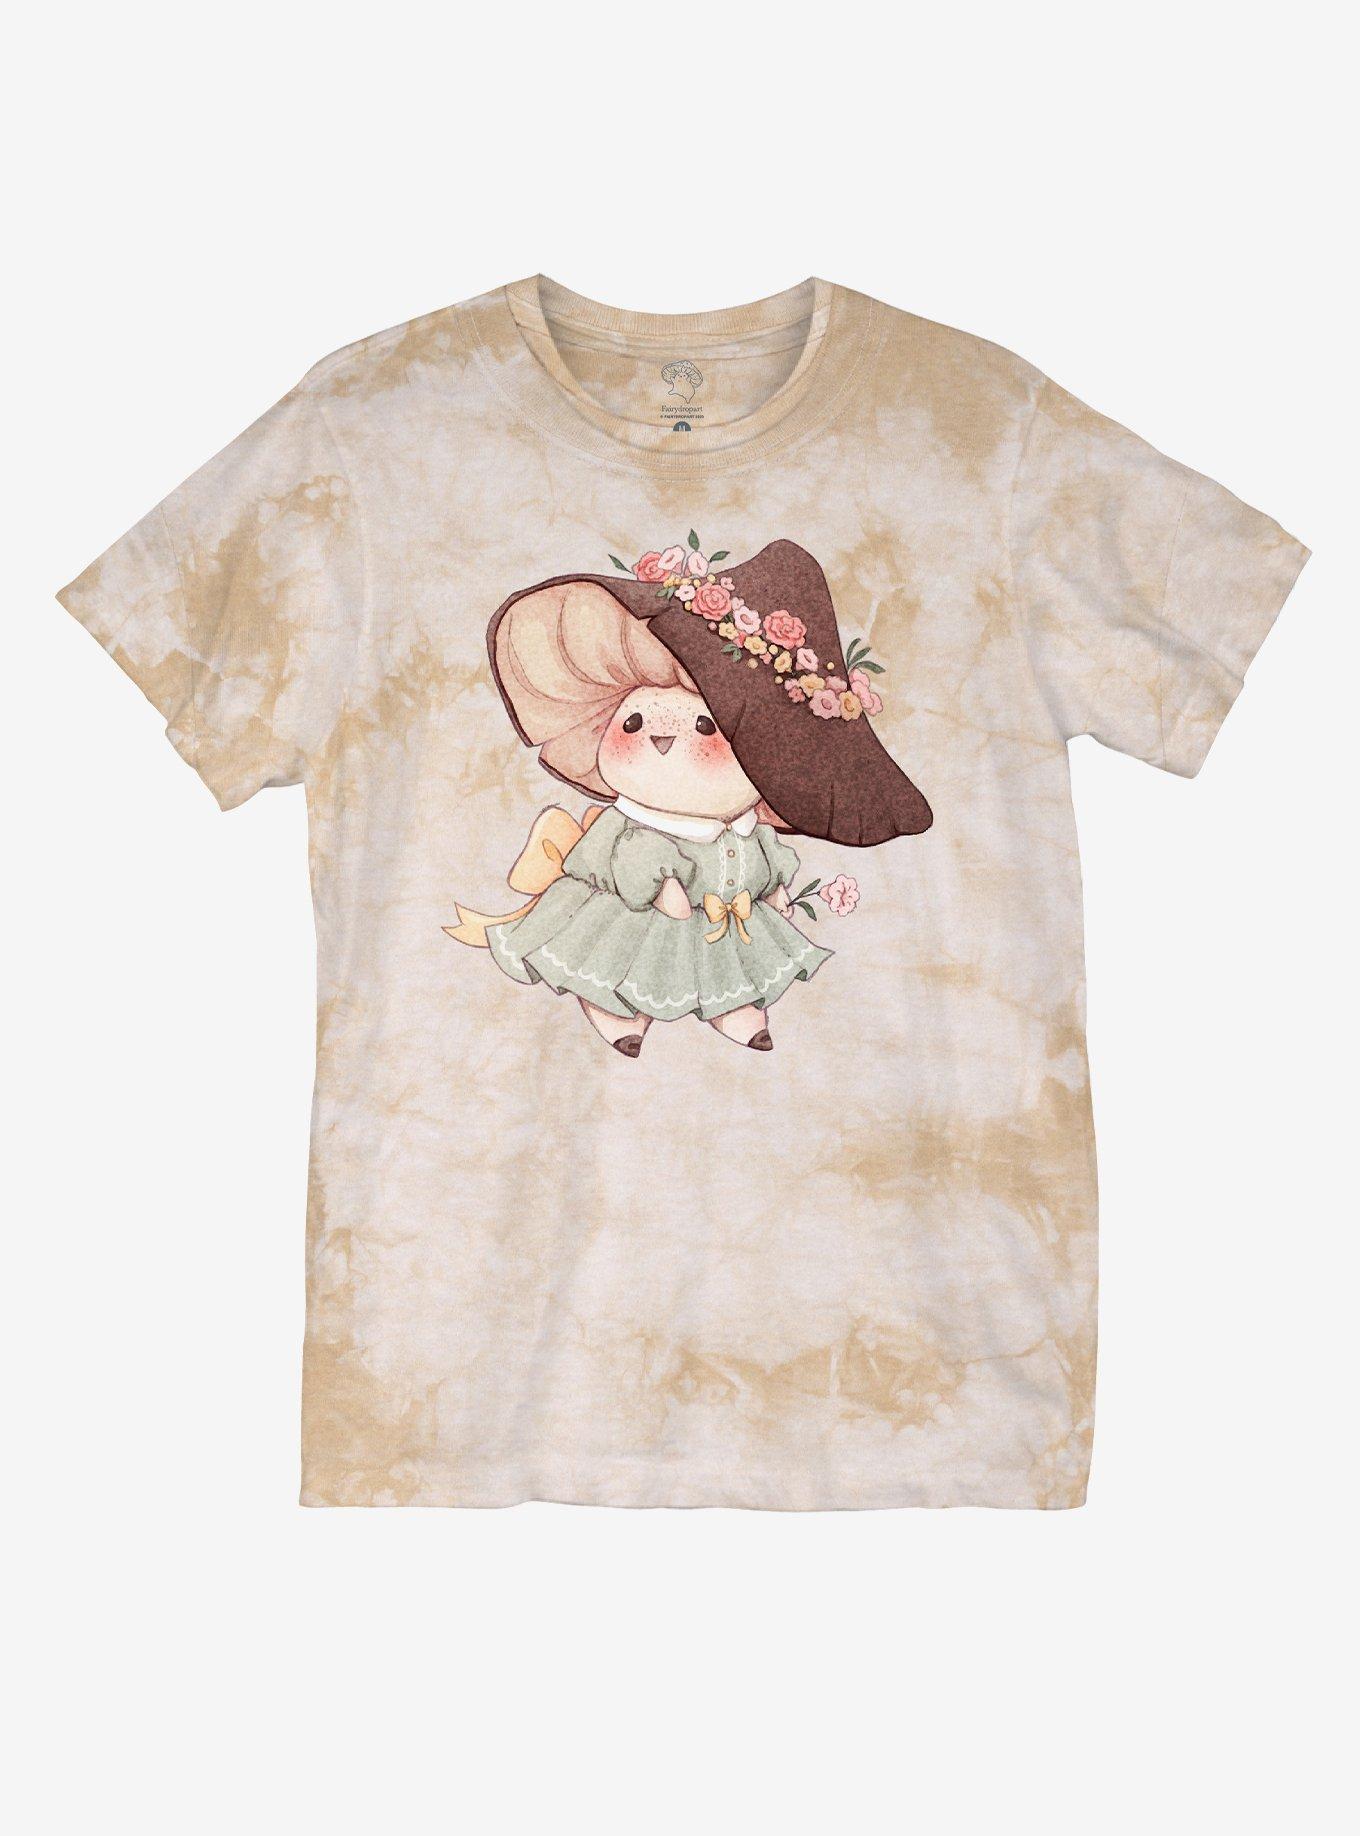 Cottagecore Mushroom Creature Wash Boyfriend Fit Girls T-Shirt By Fairydrop Art